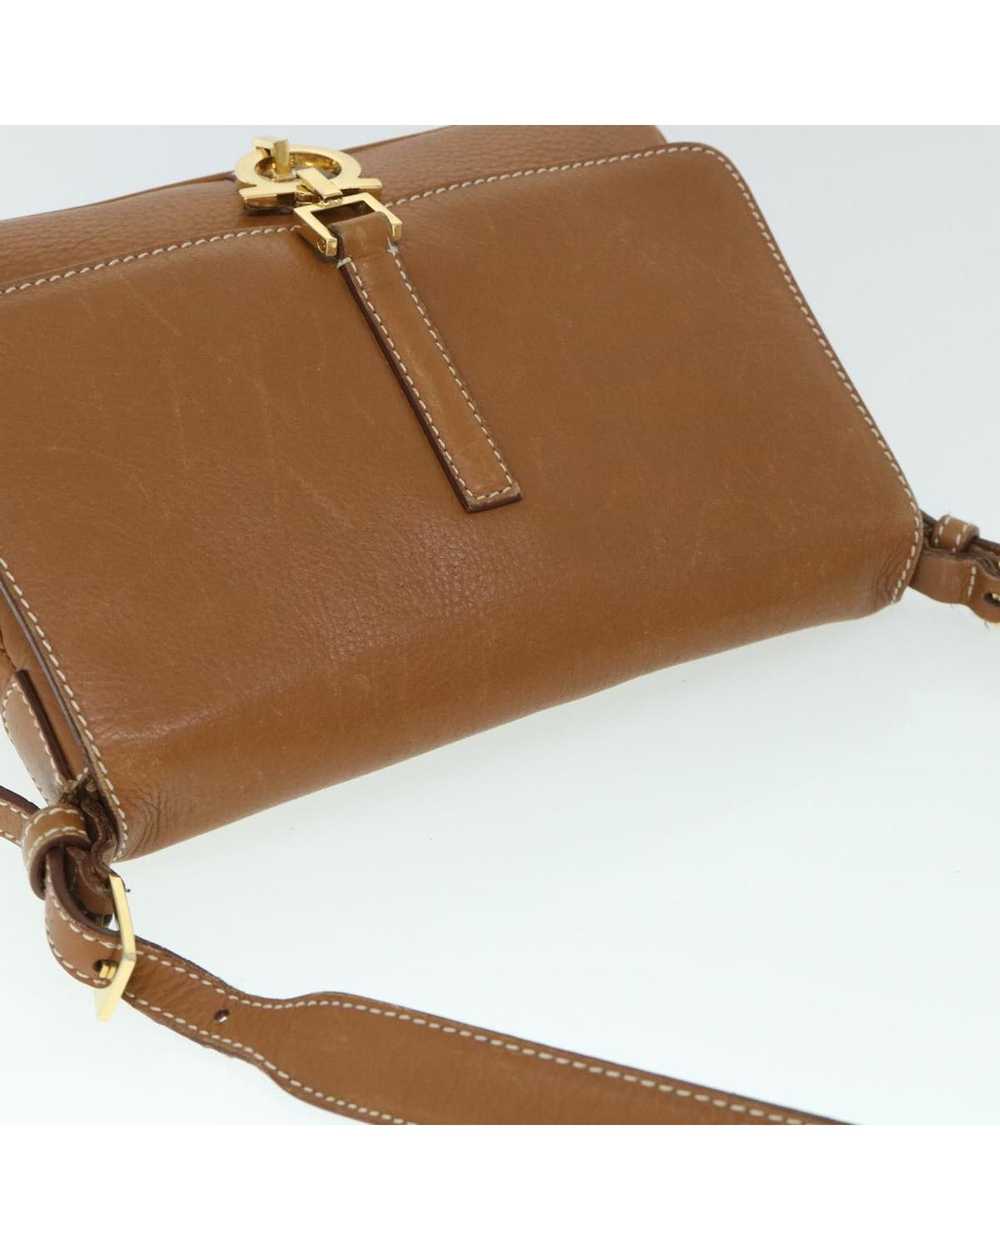 Salvatore Ferragamo Elegant Brown Leather Bag - image 6